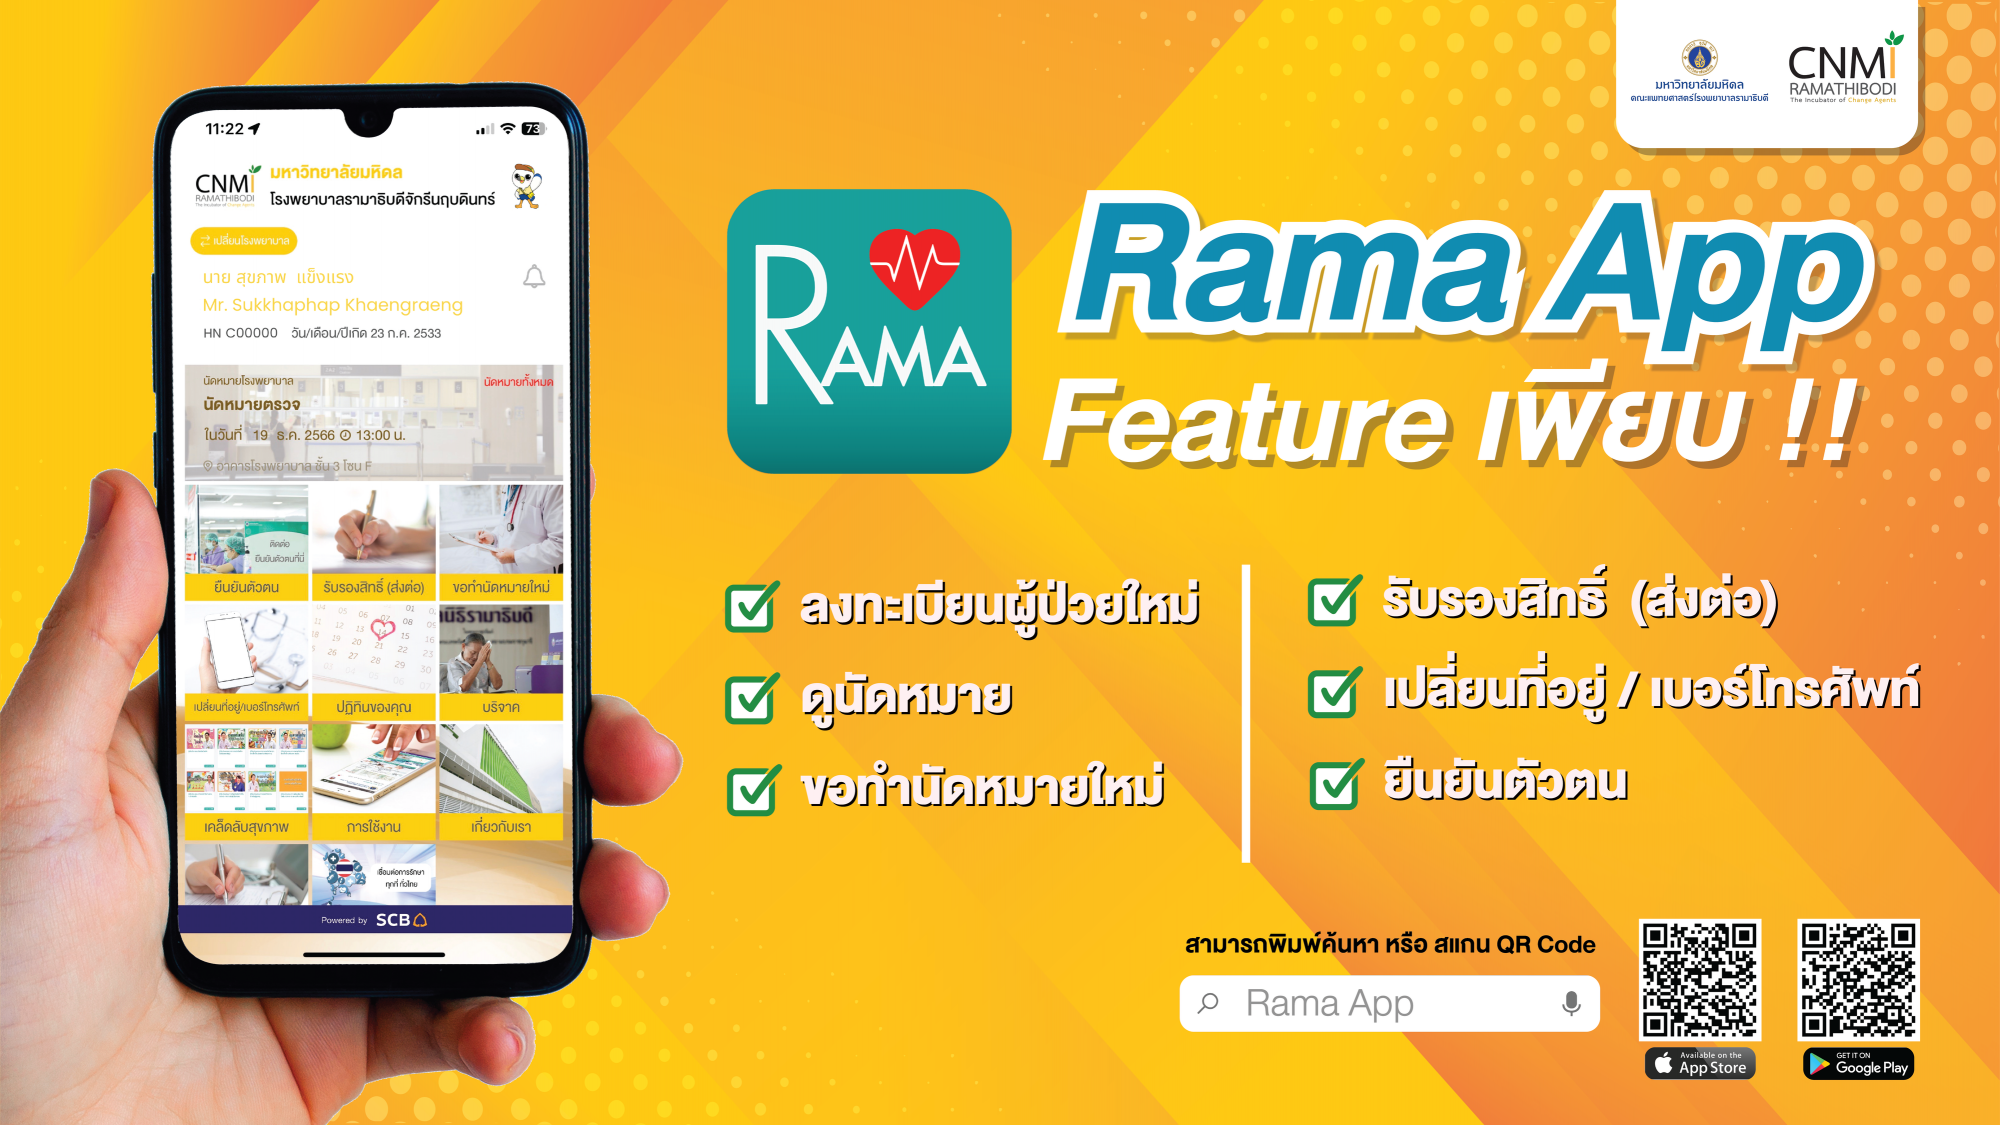 Rama App